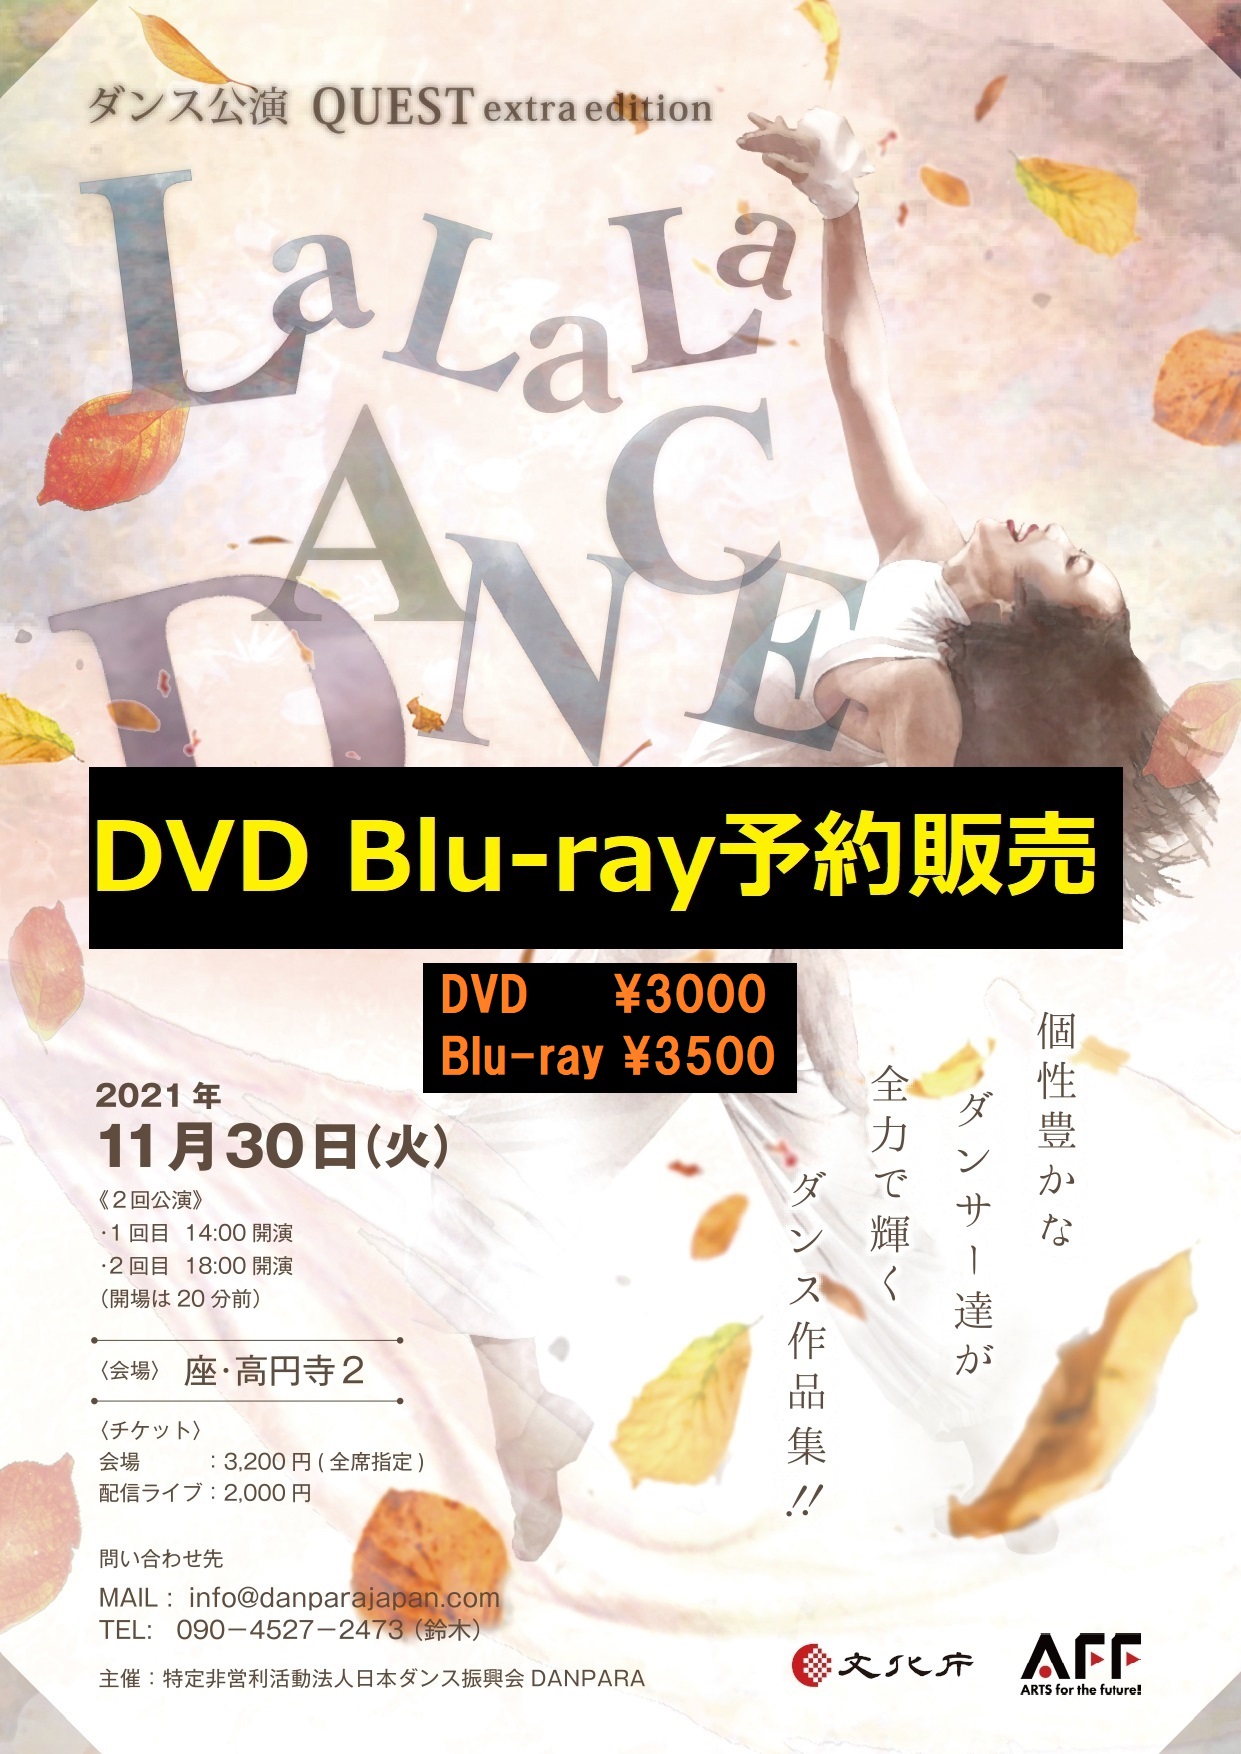 ダンス公演QUEST～LaLaLa DANCE◆DVD/Blu-ray販売◆